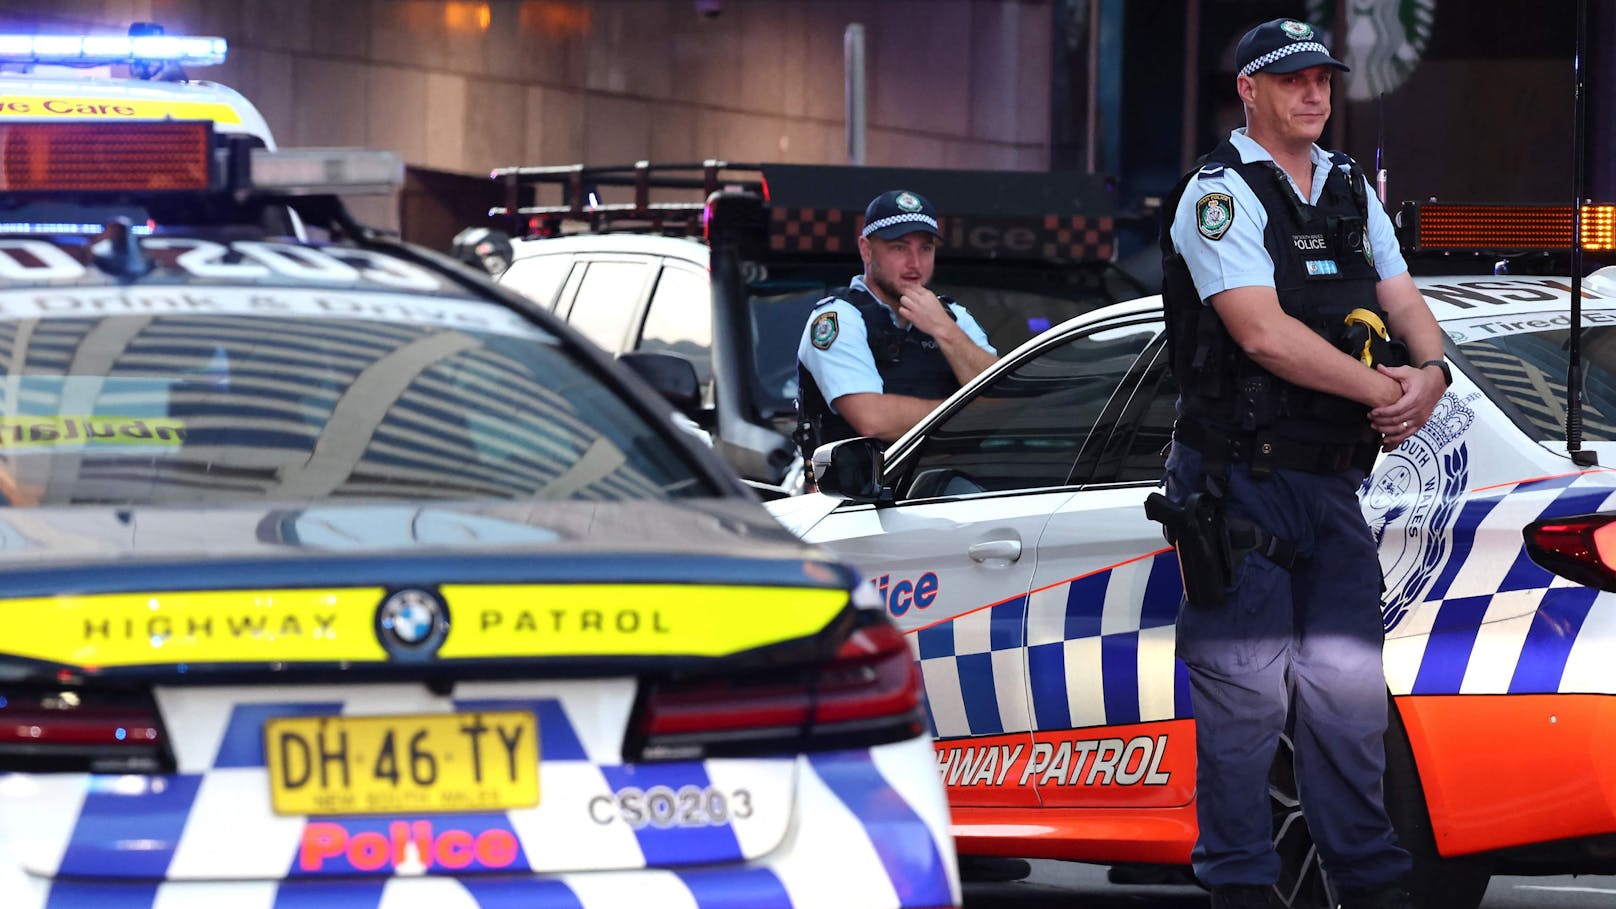 In der australischen Großstadt hat ein Mann in einem Shoppingcenter offenbar wahllos Personen angegriffen. Zeugen berichten auch von Schüssen. Mehrere Menschen sind bei der Attacke ums Leben gekommen.